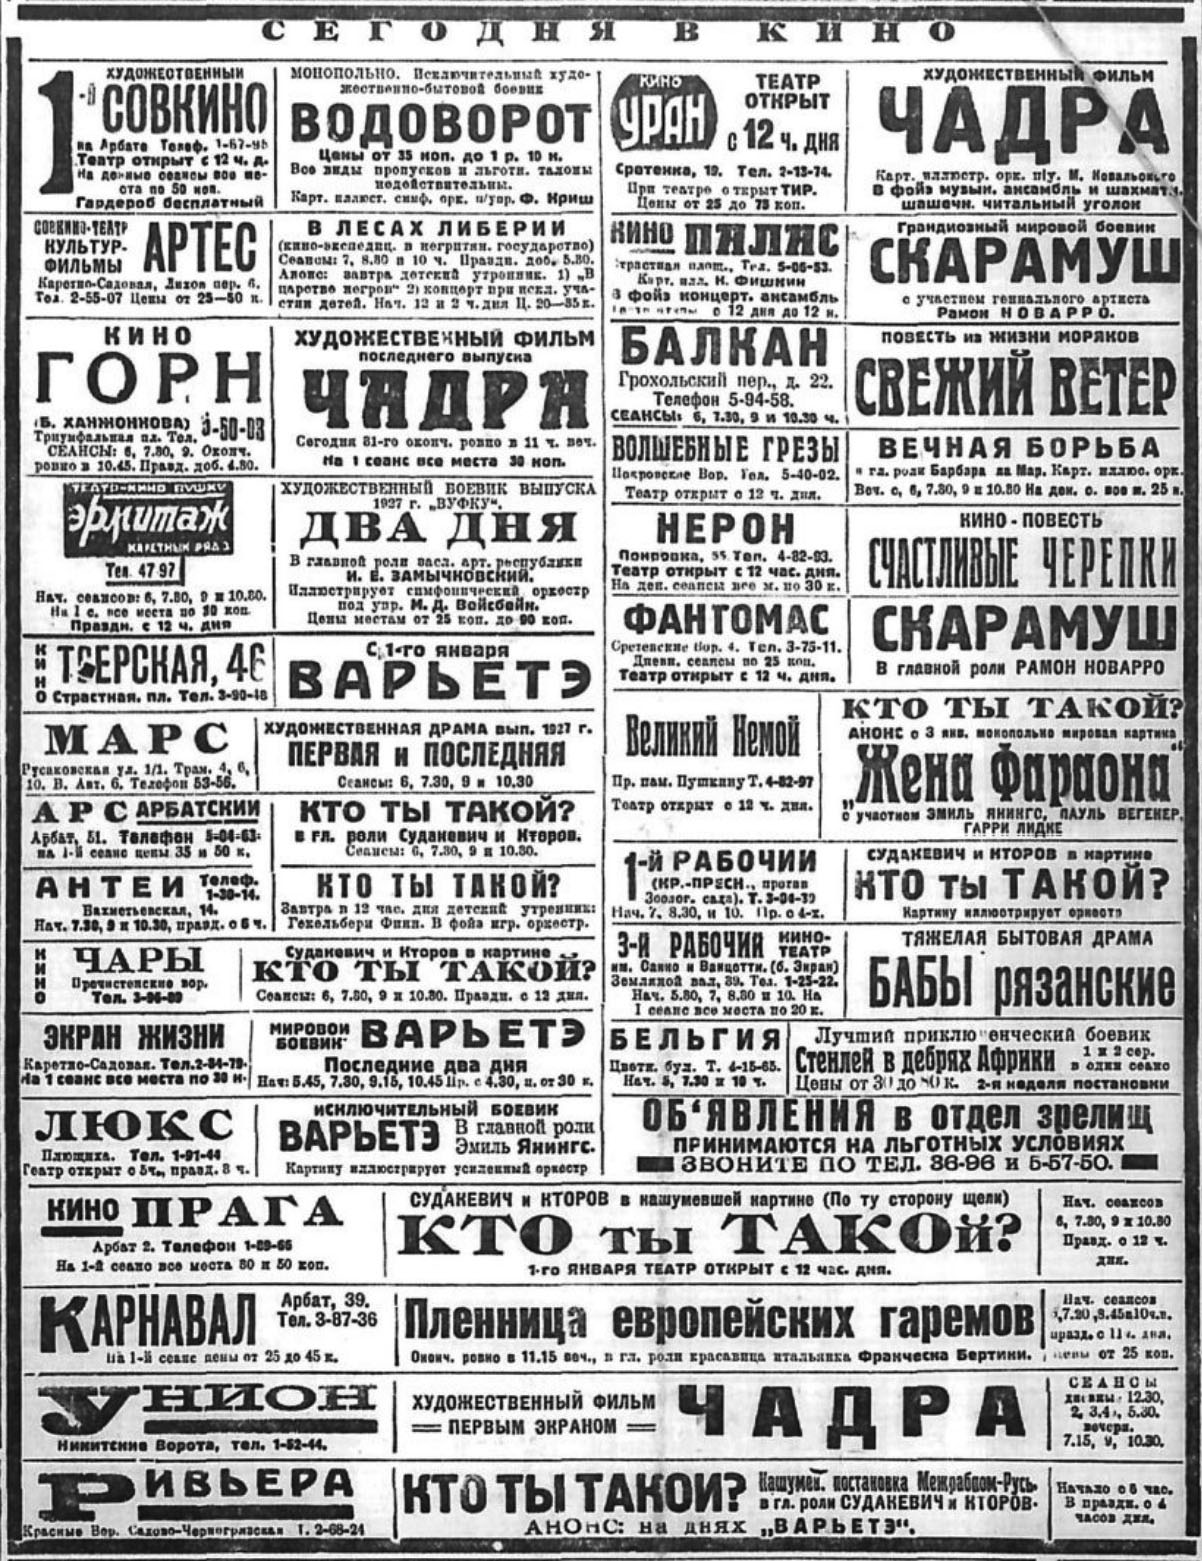 Вечерняя Москва, № 299, 31.12.1927, стр. 4.